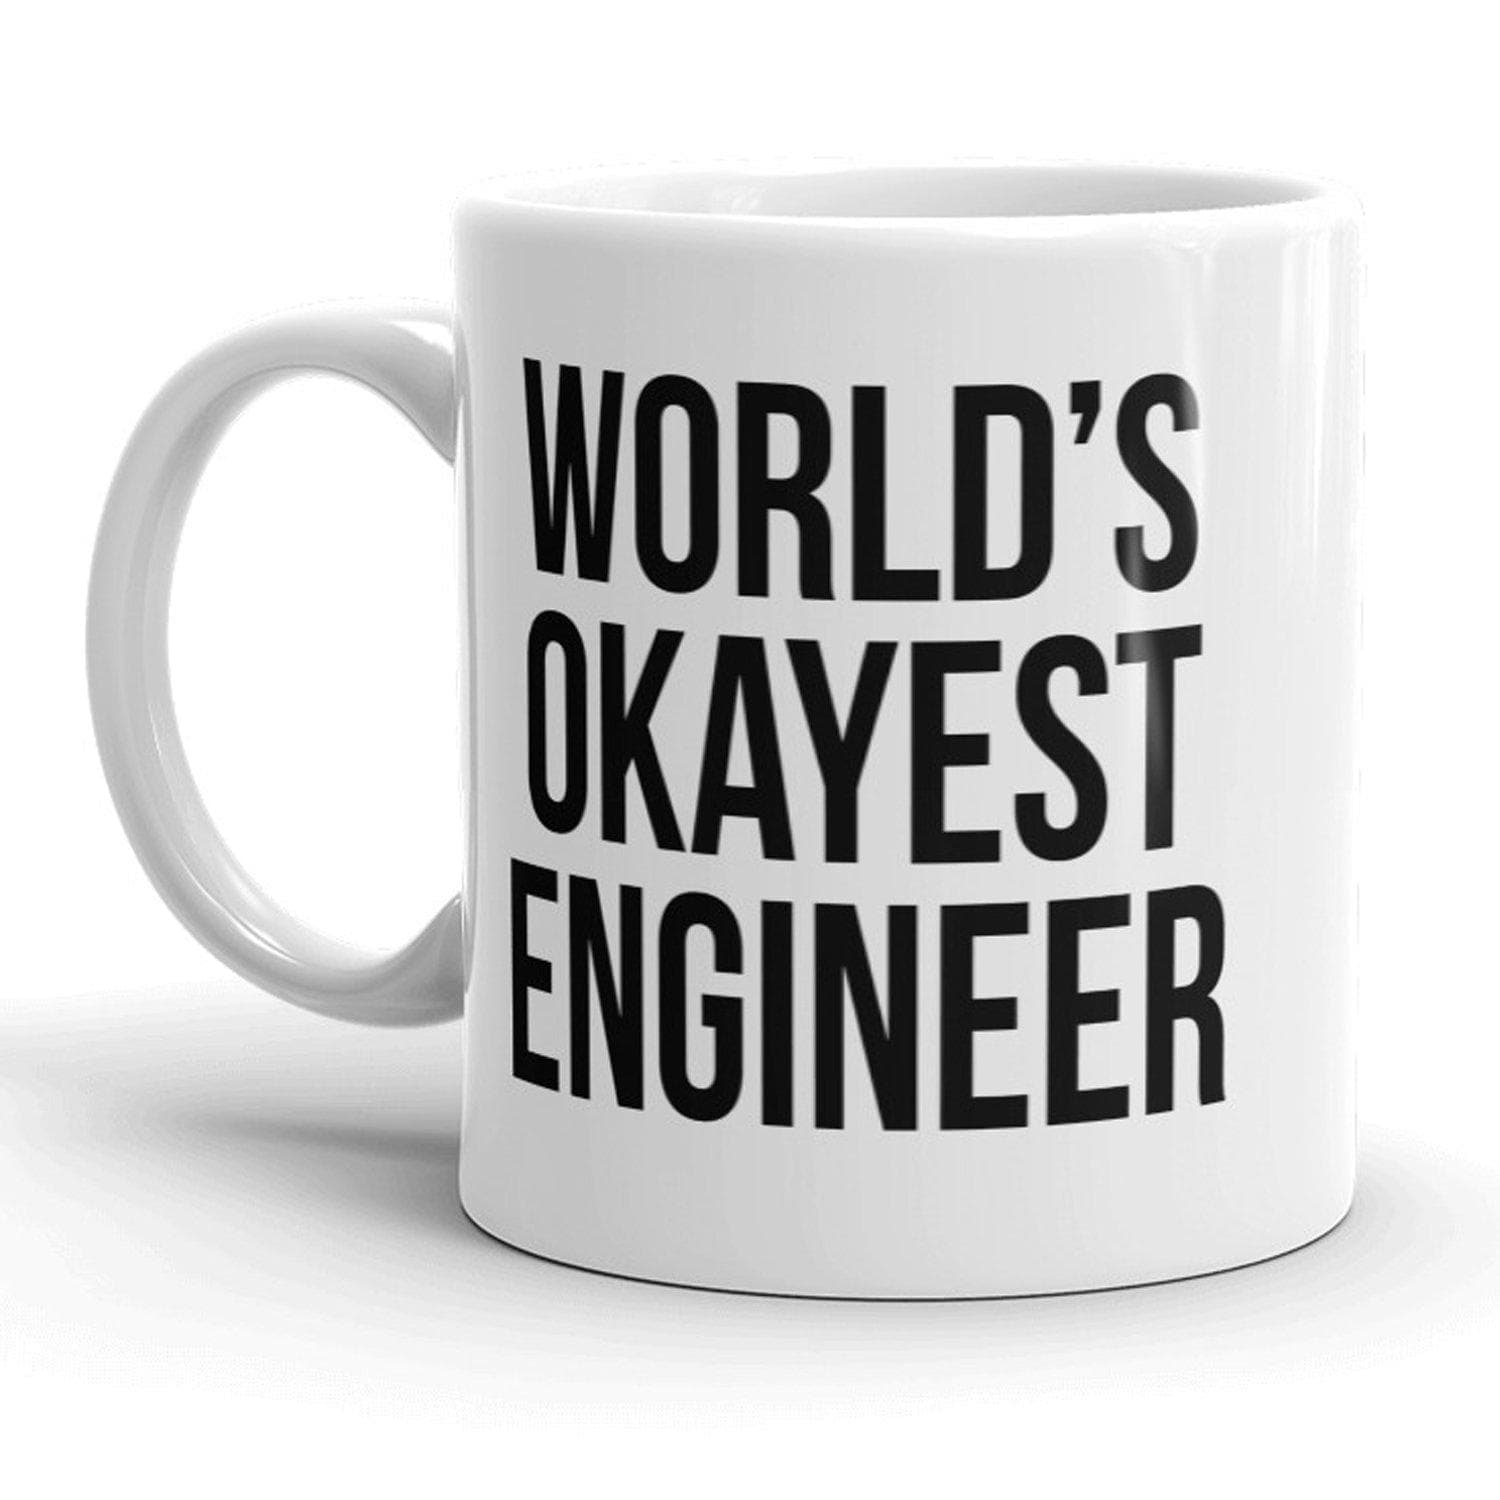 World's Okayest Engineer Mug - Crazy Dog T-Shirts